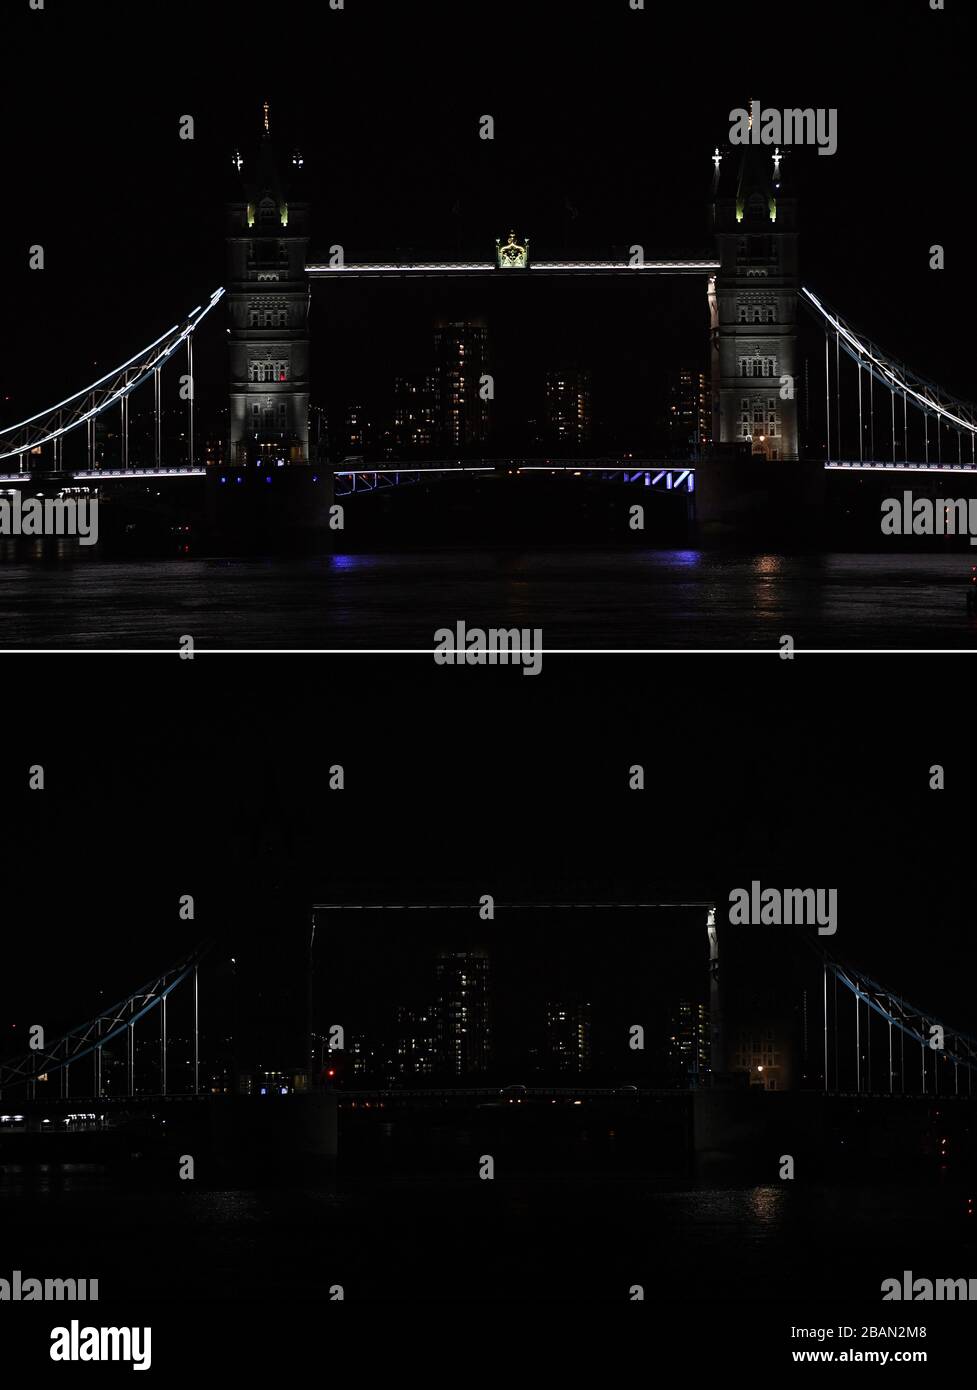 Imagen compuesta de Tower Bridge en Londres, antes y durante la hora de la Tierra. Edificios y estructuras famosas se oscurecían entre las 8:30 y las 21:30, como parte del evento internacional organizado por WWF para instar a la acción para salvar el planeta. Foto de stock